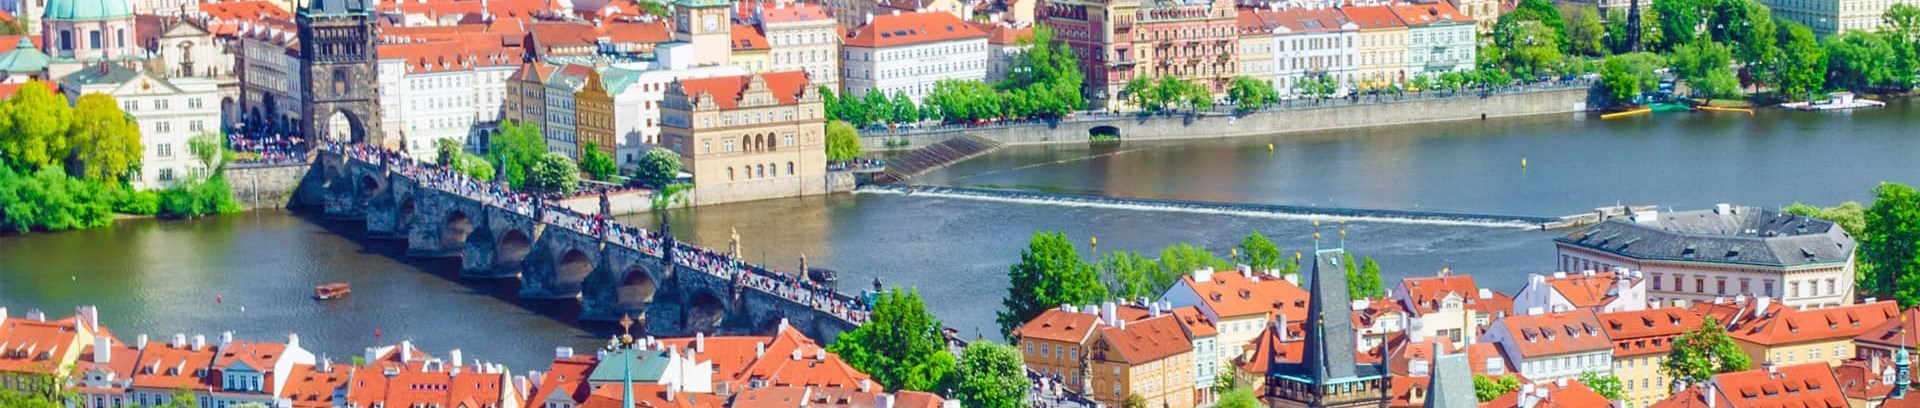 Tjekkiet by, sprogkursus i tjekkisk ved FOF Aarhus